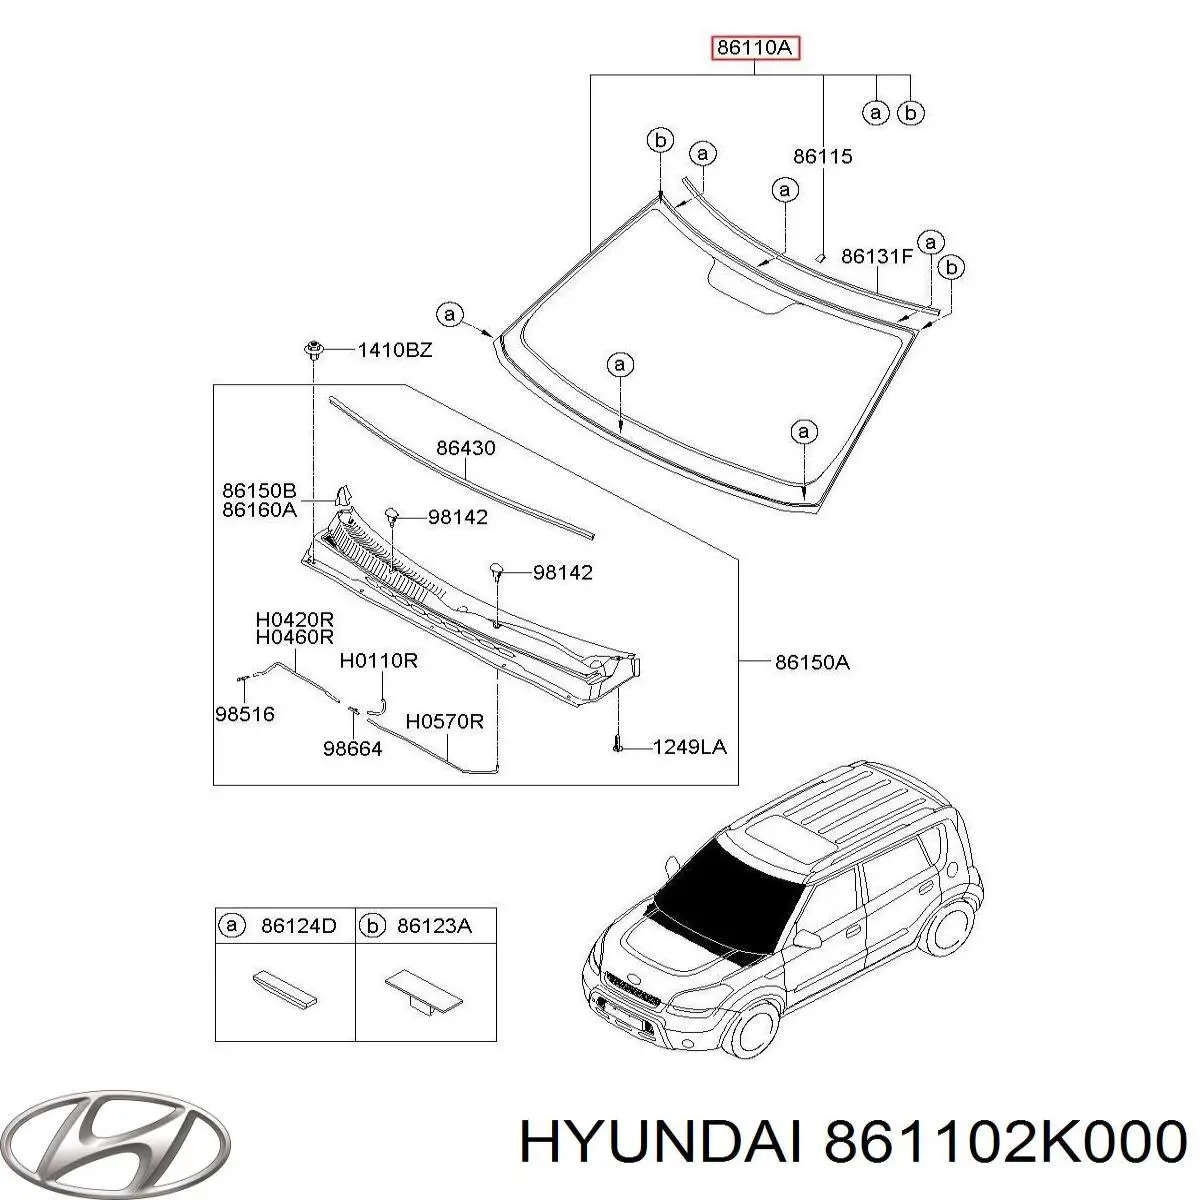 861102K000 Hyundai/Kia parabrisas